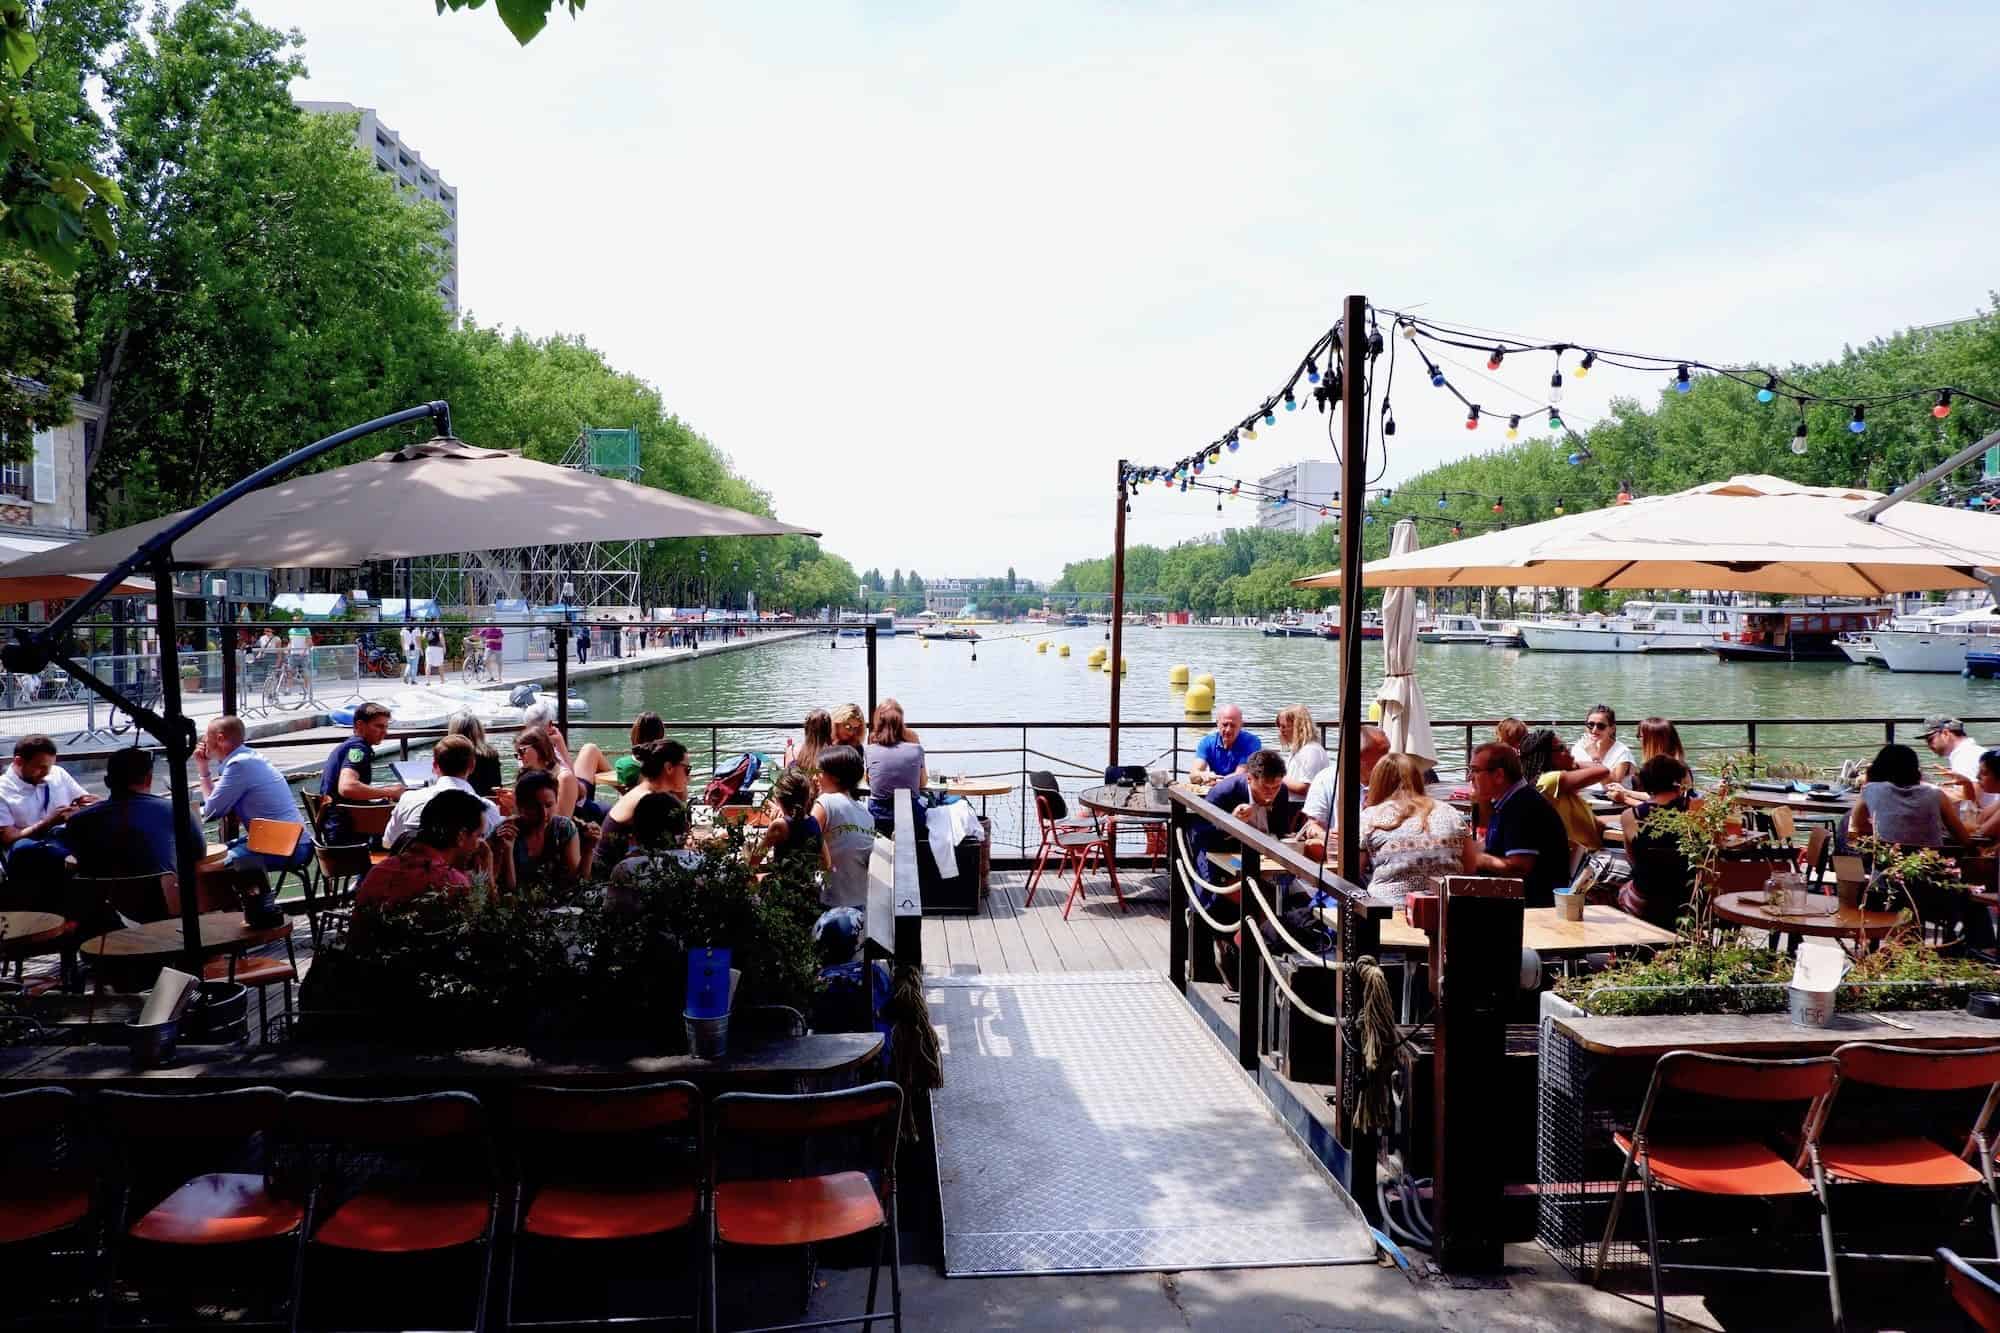 Exploring Paris’ Canal de l’Ourcq